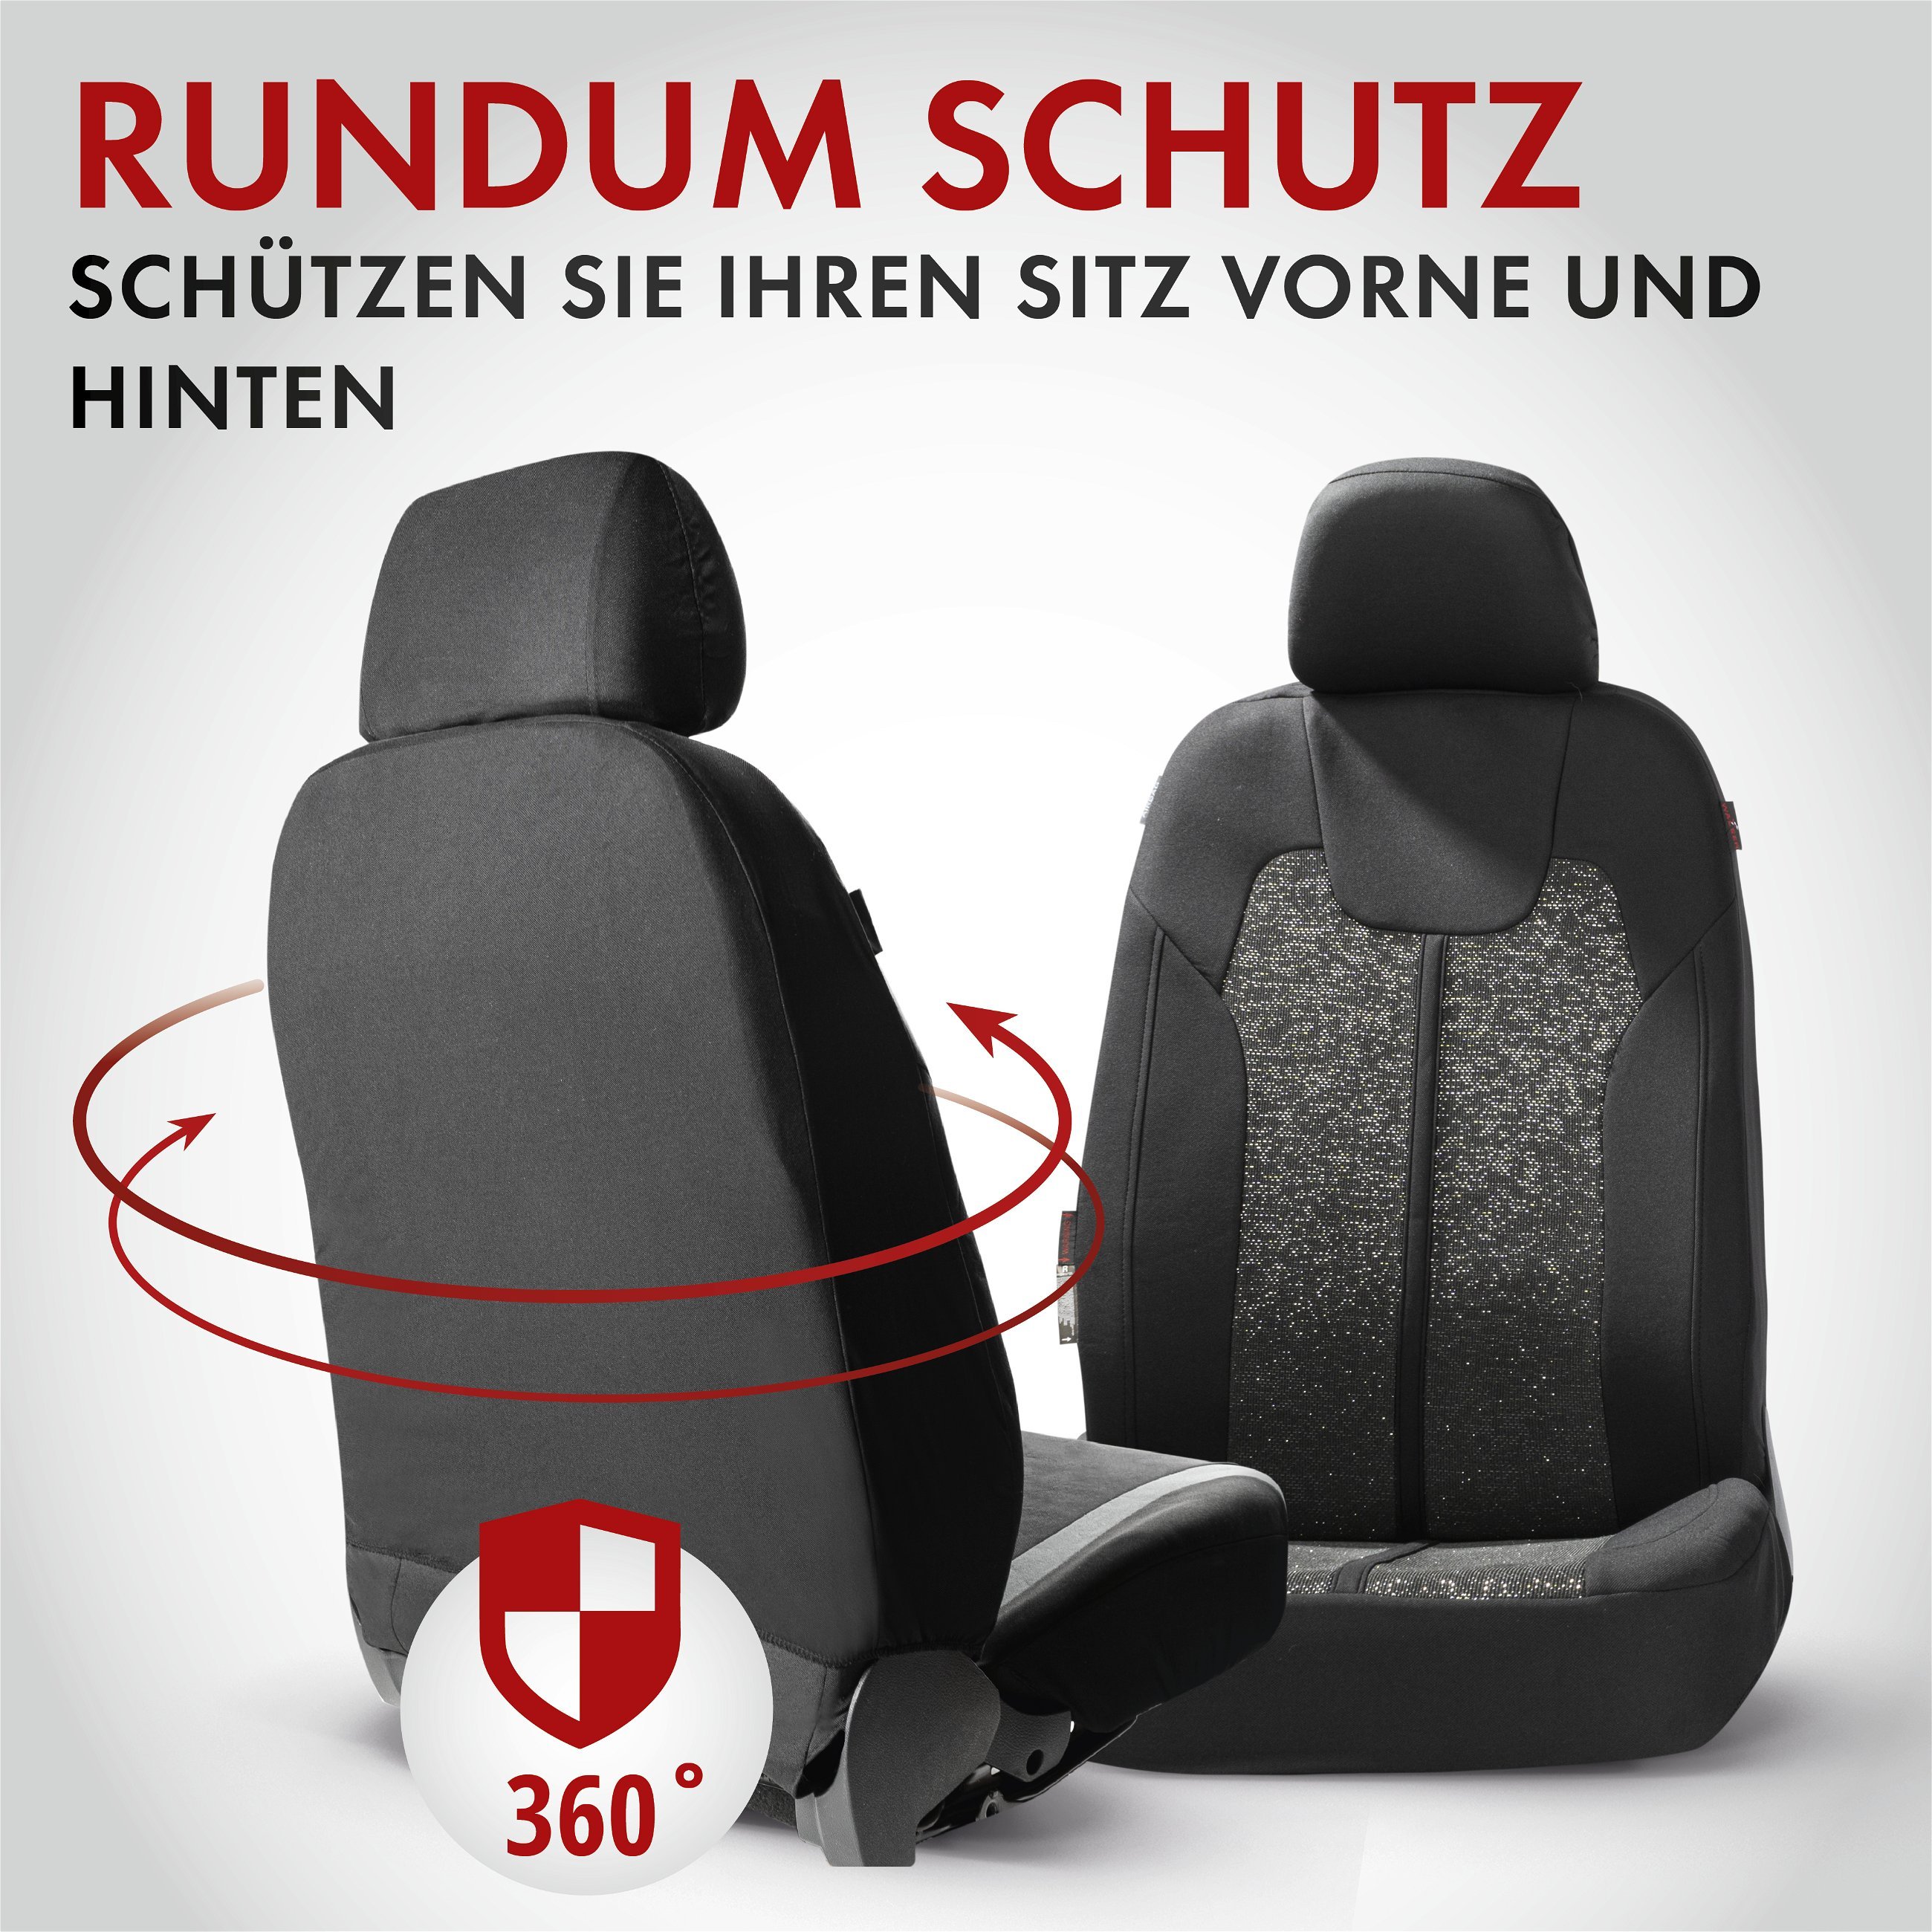 Autositzbezug ZIPP-IT Corso, PKW-Schonbezüge für 2 Vordersitze mit Reißverschluss-System schwarz/silber